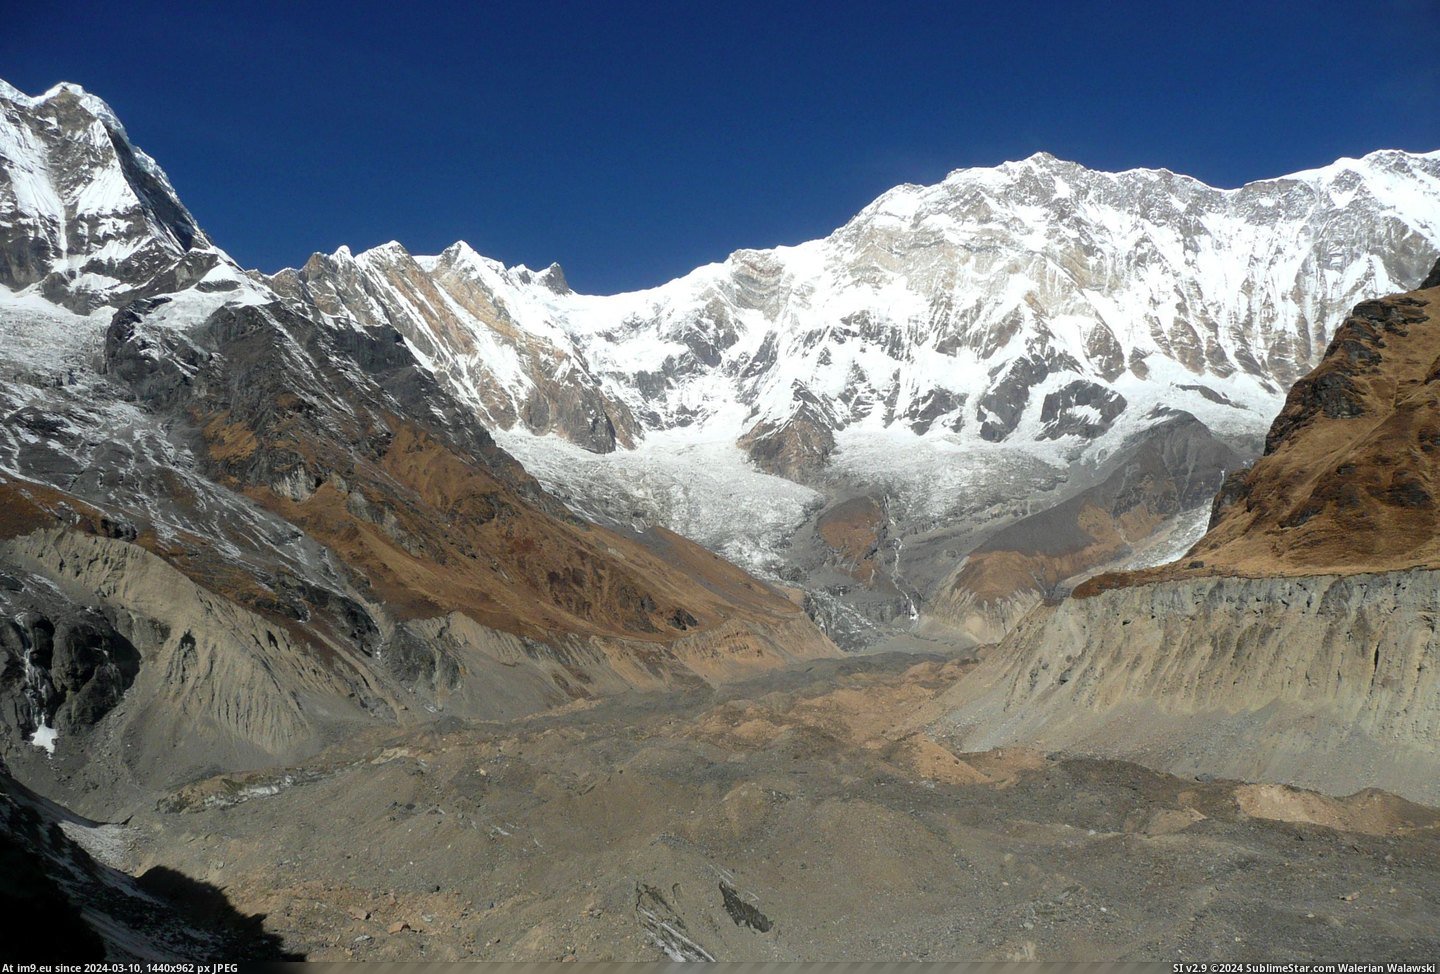 #Glacier #Covered #Nepal #Landslides #Wasn #Disappointed [Earthporn] The Landslides covered the Glacier, still wasn't Disappointed - Nepal (2764X1859) Pic. (Изображение из альбом My r/EARTHPORN favs))